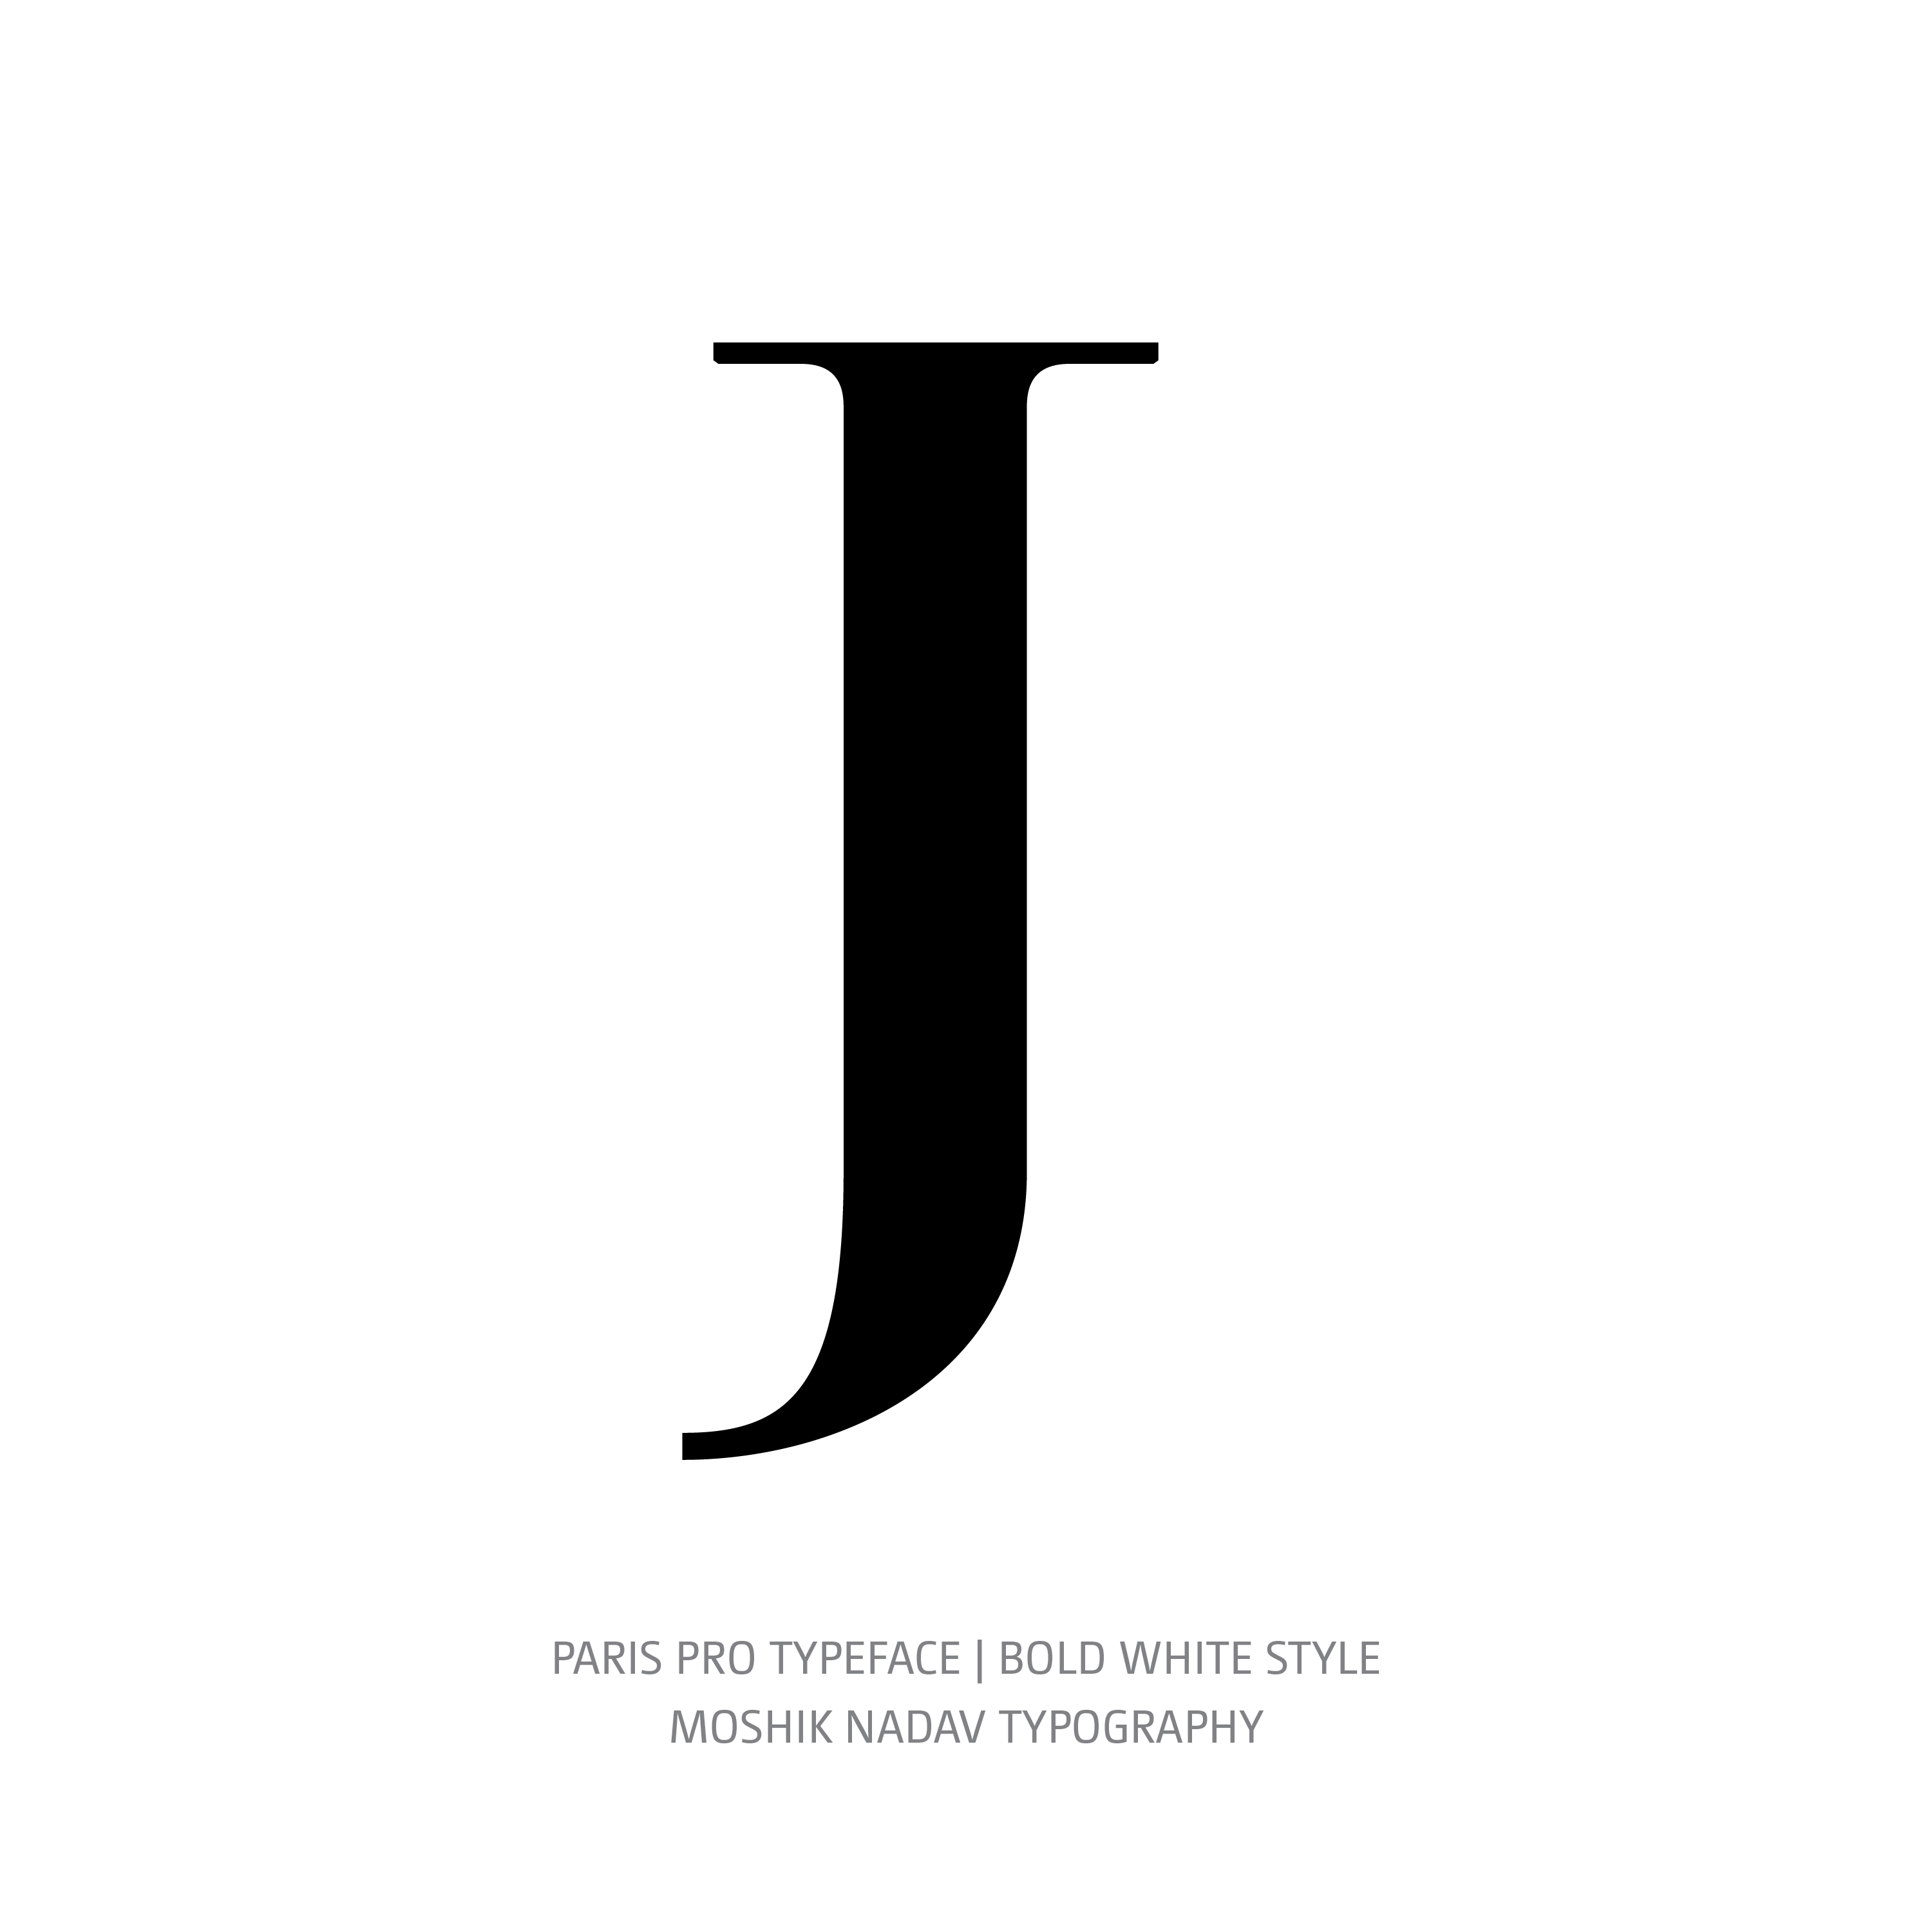 Paris Pro Typeface Bold White J